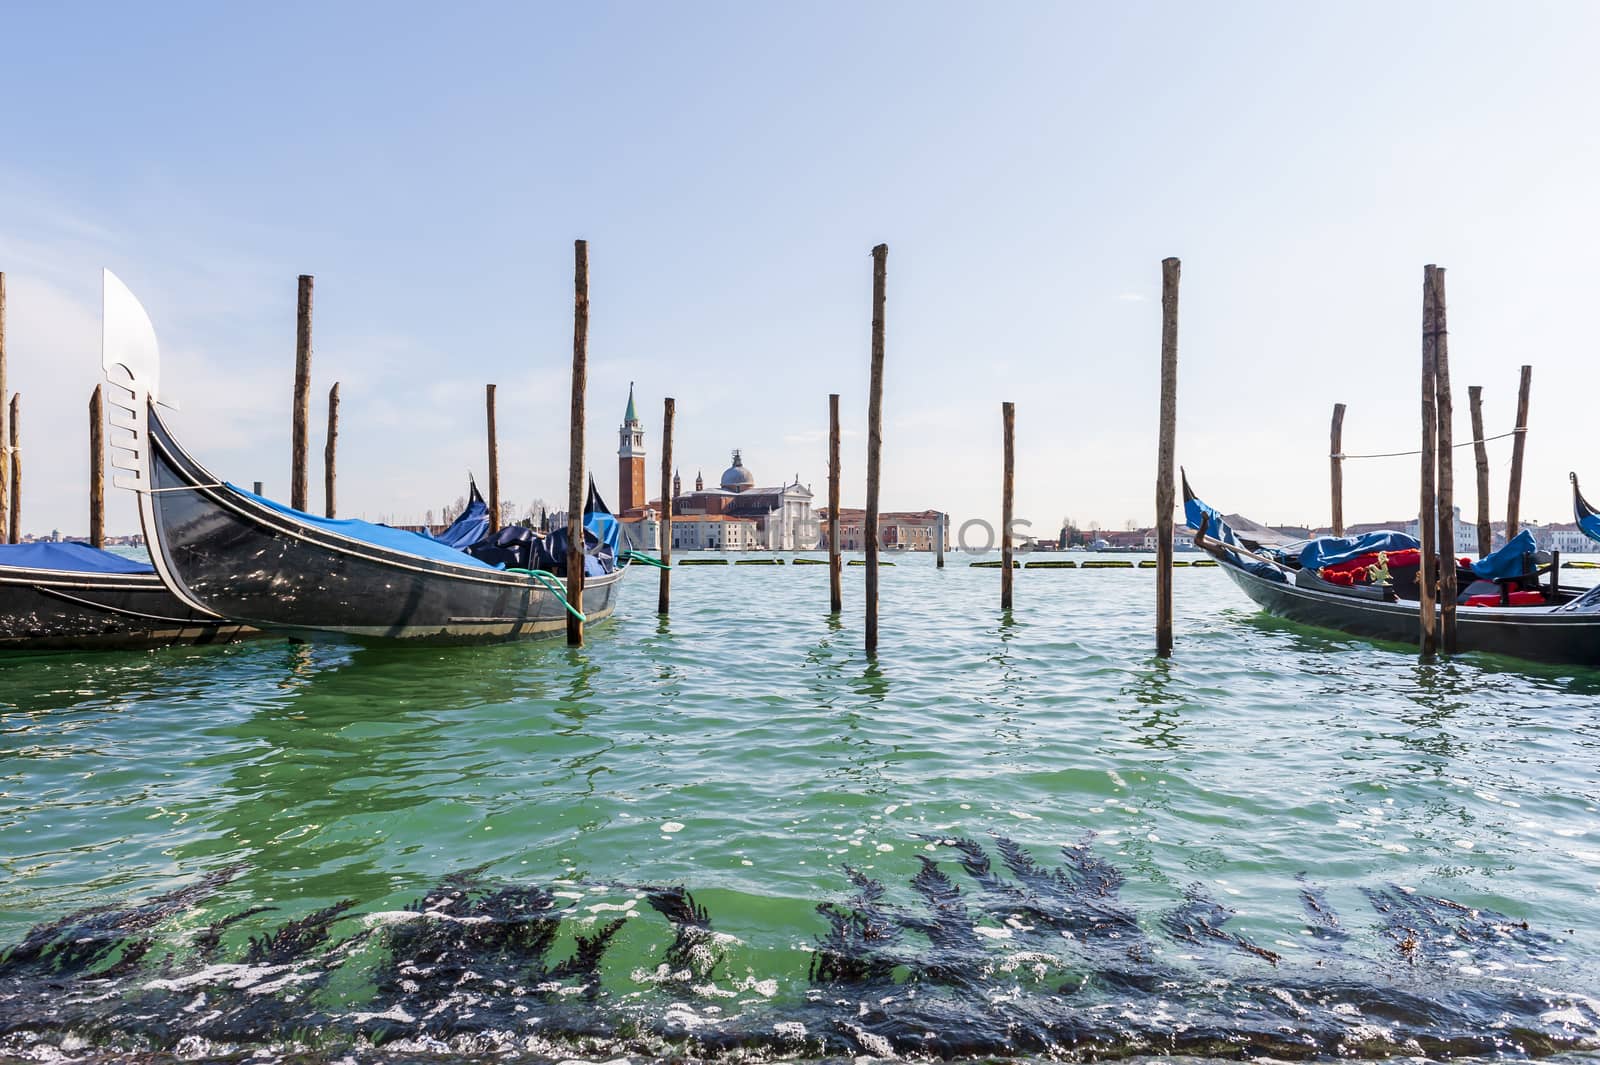 Gondolas and Island of San Giorgio Maggiore in the background in the lagoon of Venice in Veneto, Italy by Frederic